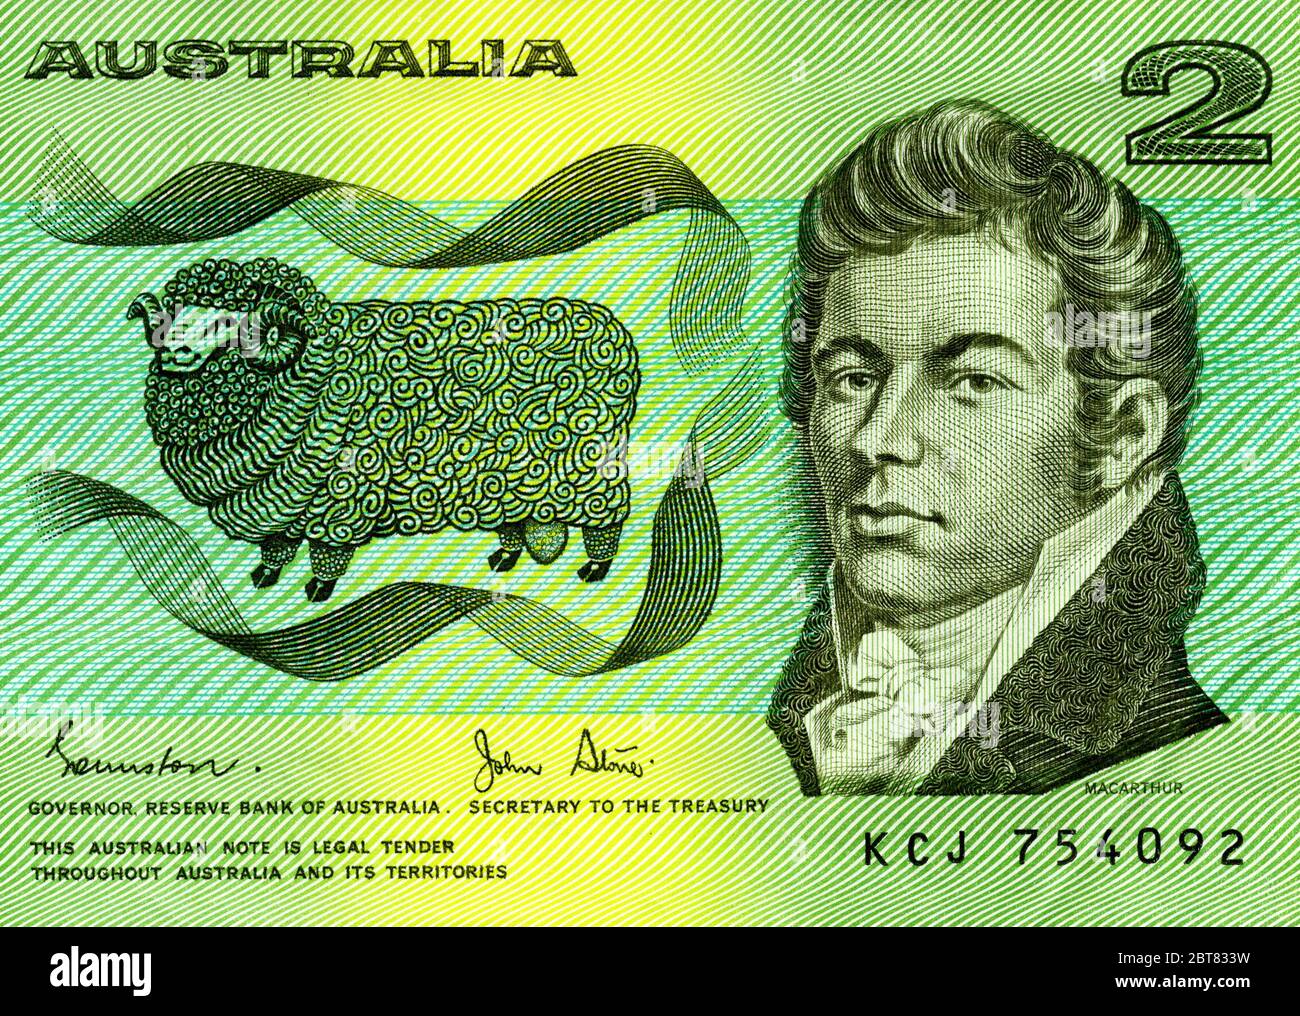 Dettaglio della vecchia banconota australiana da 2 dollari con l'allevatore di pecore John Macarthur. Foto Stock